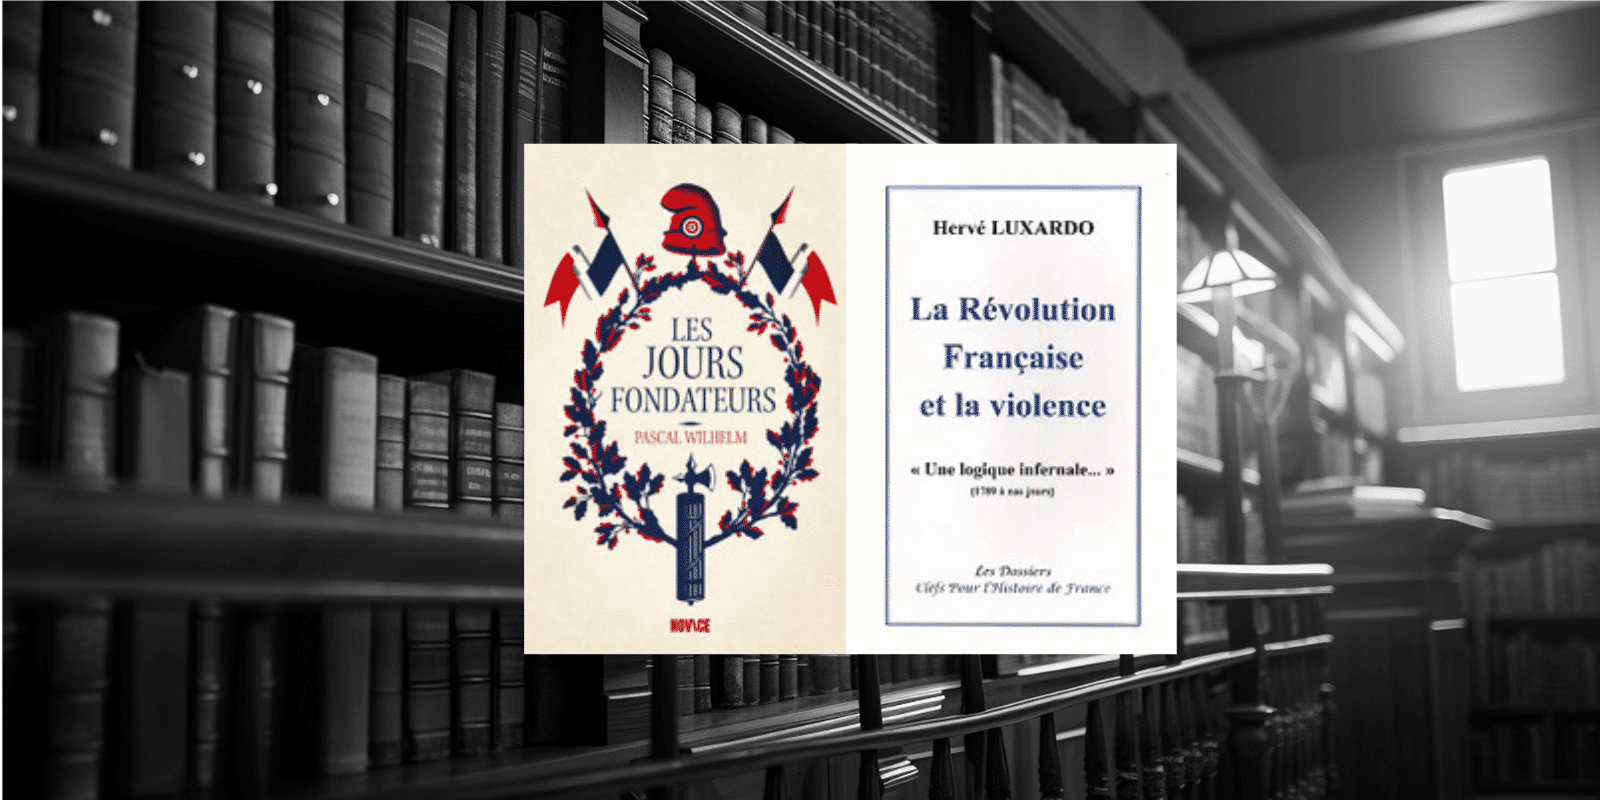 Livre : “Les jours fondateurs” et “La révolution Française et la violence”Une logique infernale …” (1789 à nos jours)